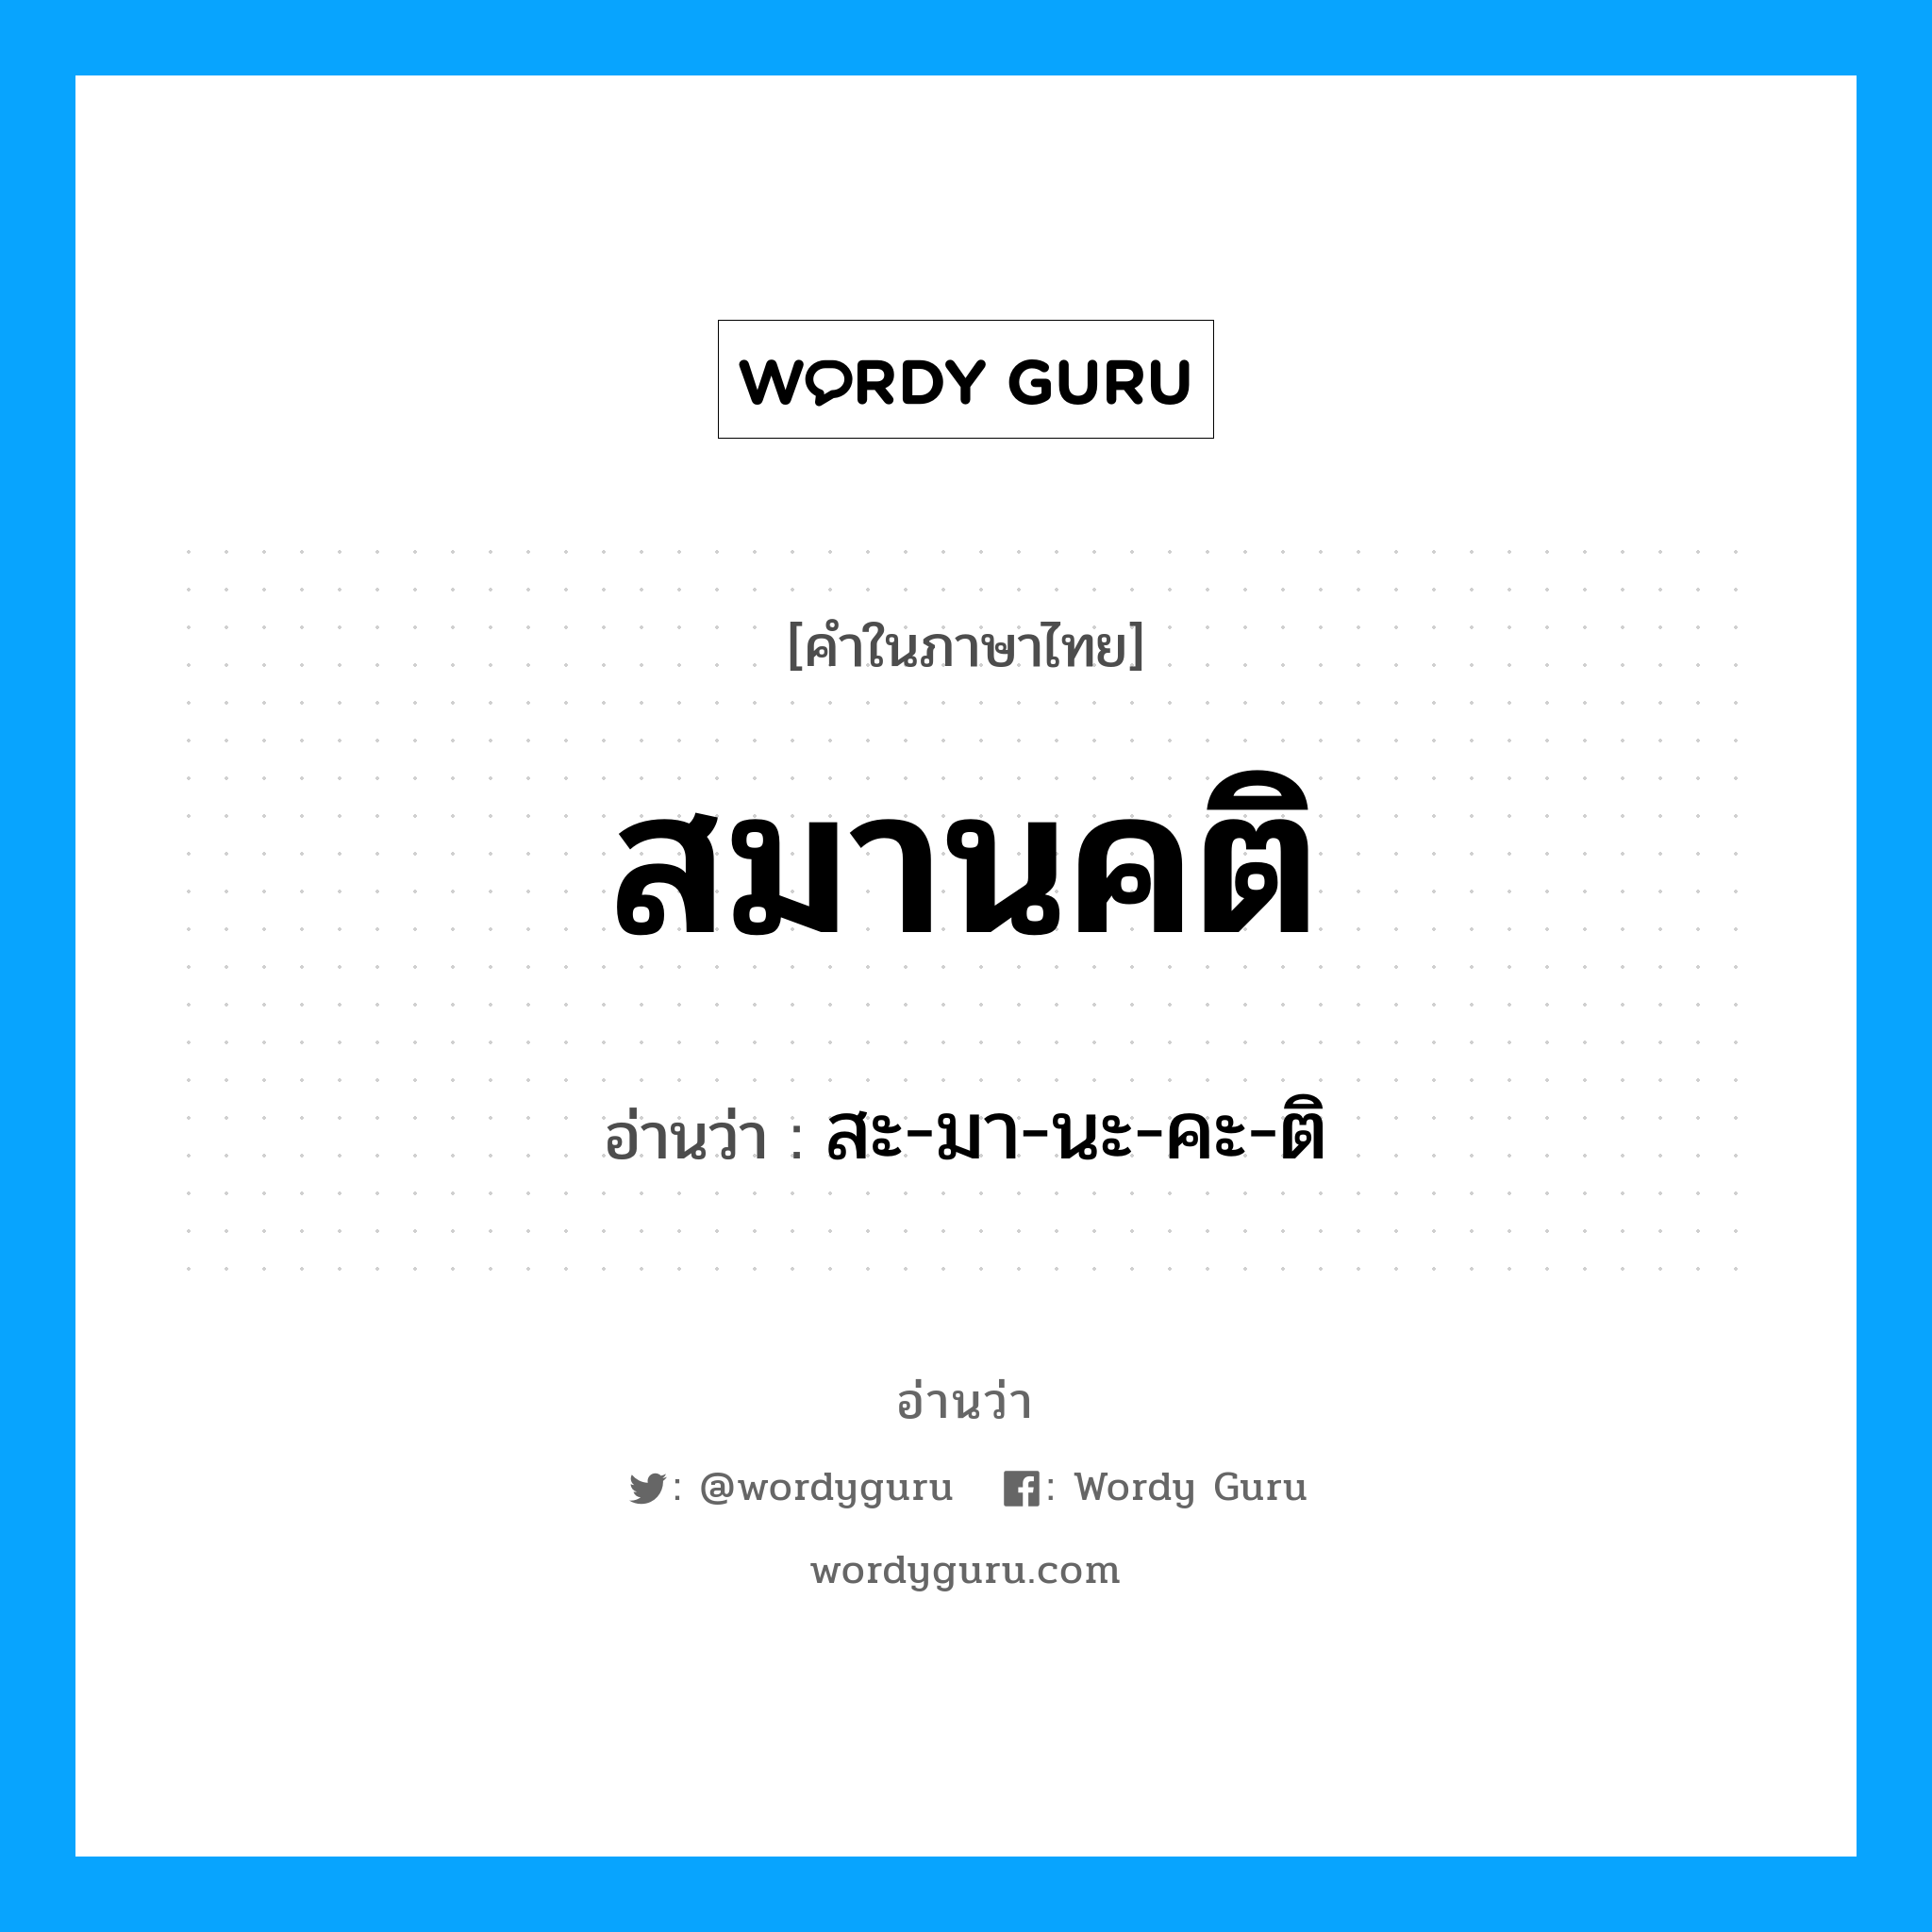 สะ-มา-นะ-คะ-ติ เป็นคำอ่านของคำไหน?, คำในภาษาไทย สะ-มา-นะ-คะ-ติ อ่านว่า สมานคติ